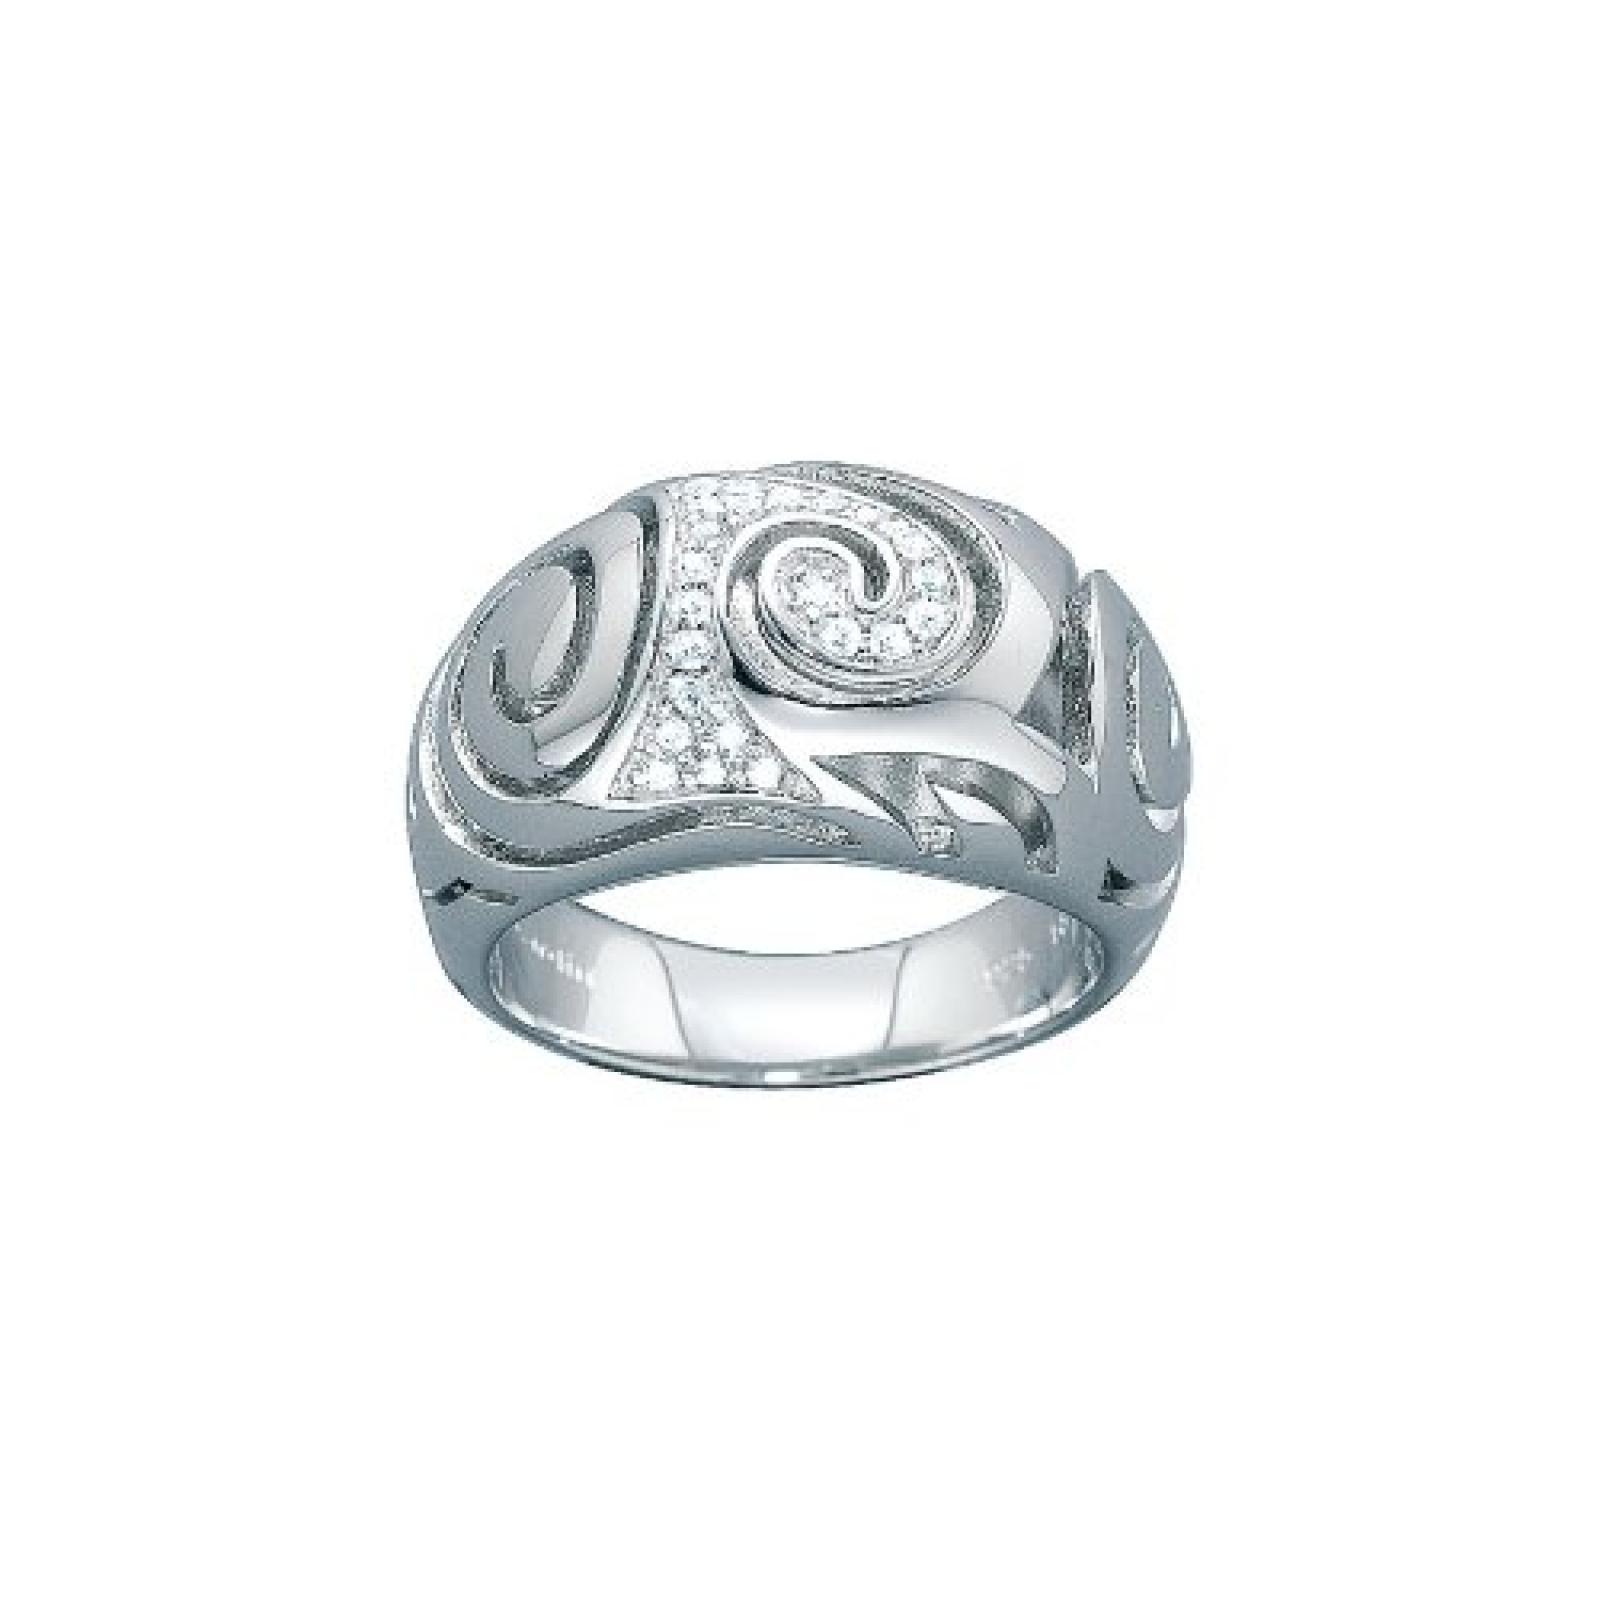 Pierre Cardin Damen-Ring Sterling-Silber 925 Les Arts 431692491 